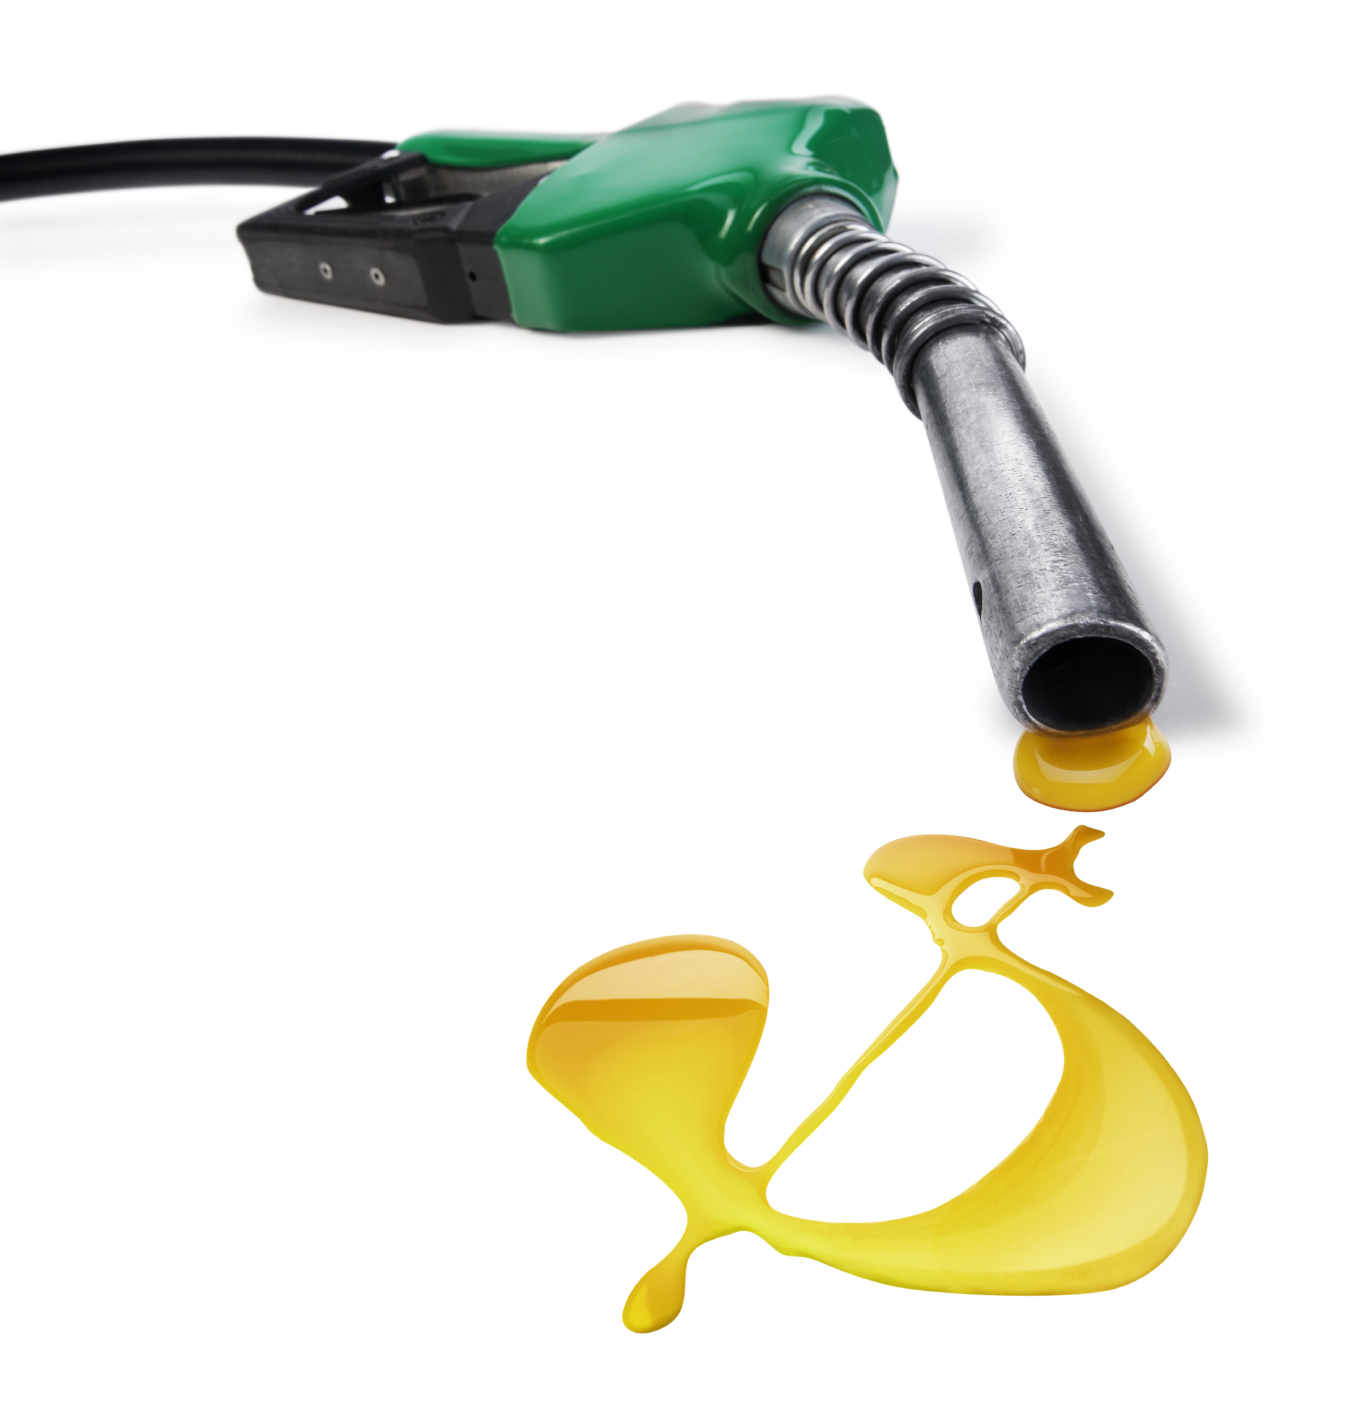 Втрата пального: що з акцизним податком?